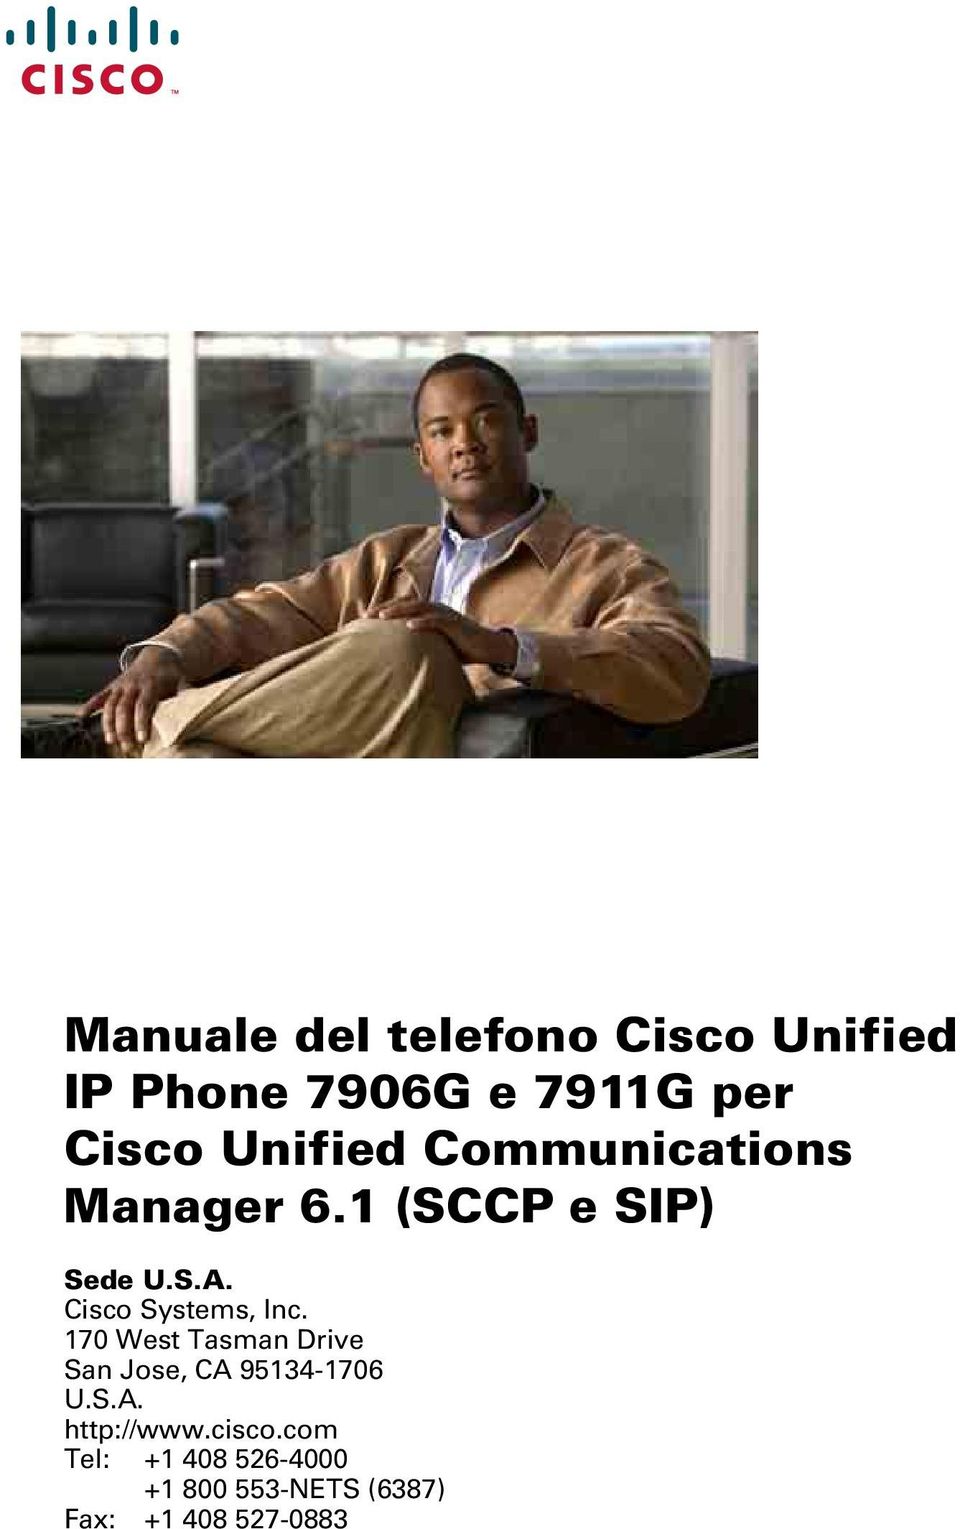 Cisco Systems, Inc. 170 West Tasman Drive San Jose, CA 95134-1706 U.S.A. http://www.